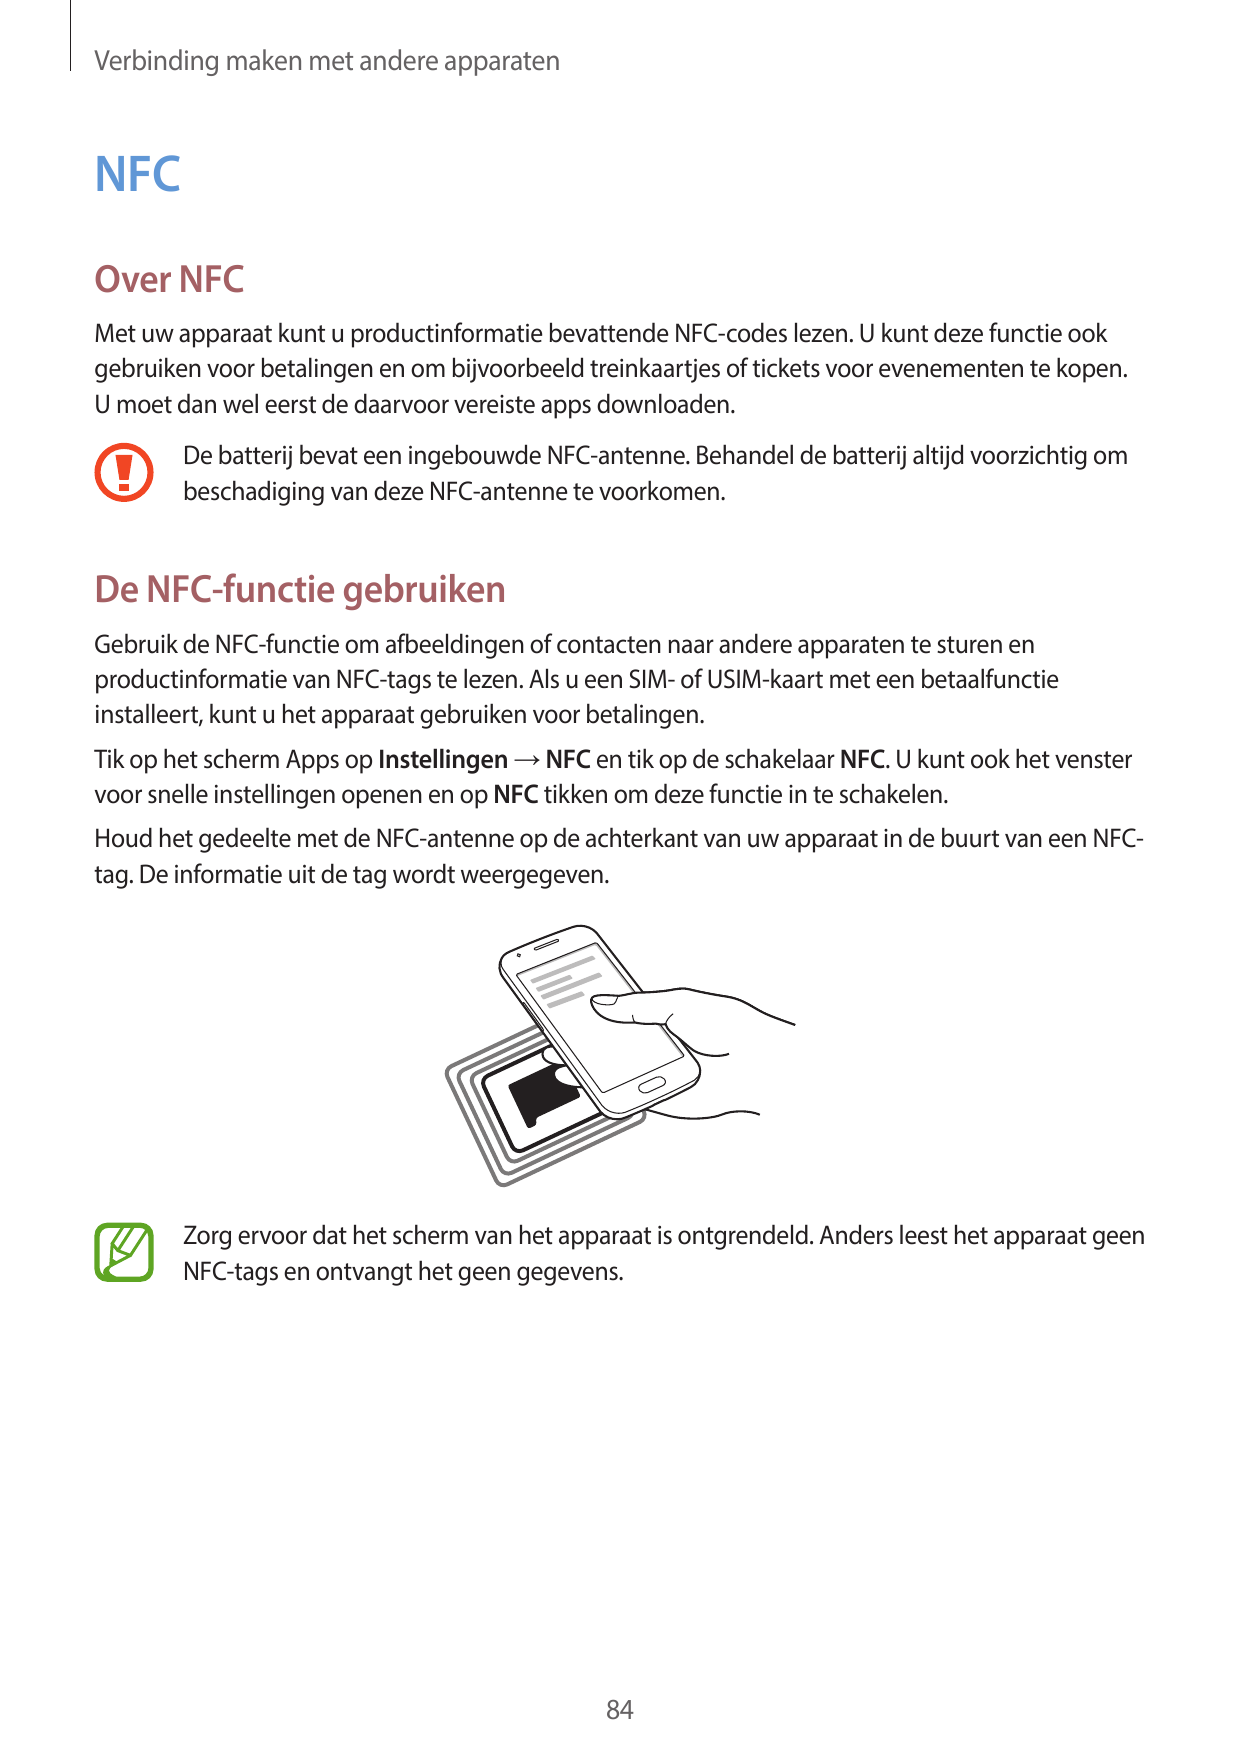 Verbinding maken met andere apparatenNFCOver NFCMet uw apparaat kunt u productinformatie bevattende NFC-codes lezen. U kunt deze